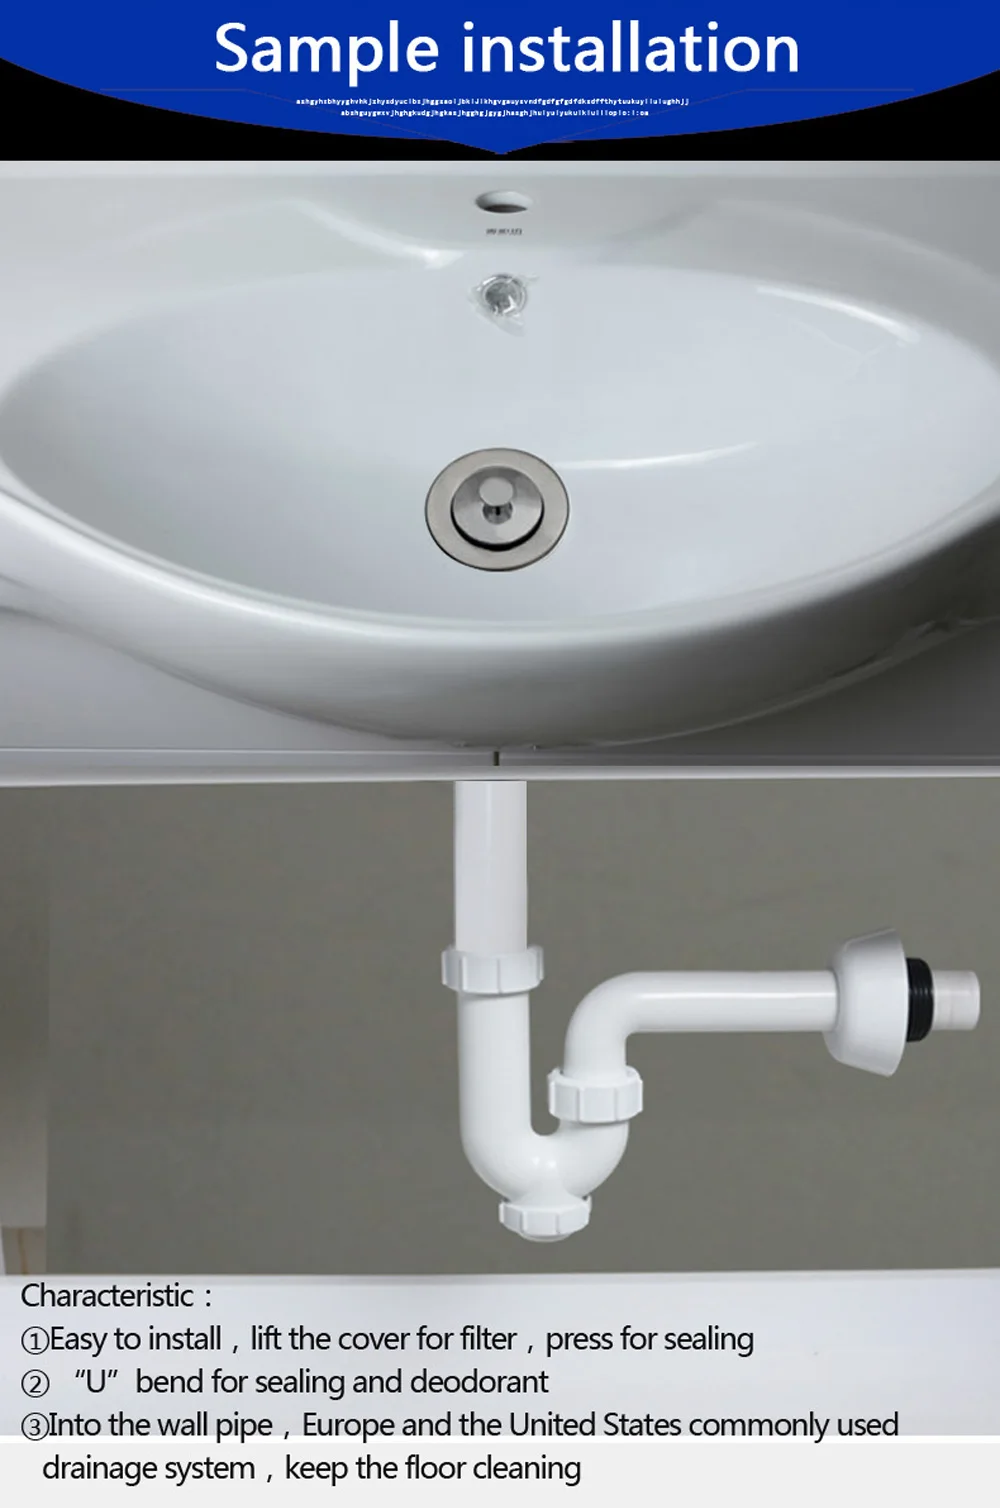 Talea Ванная комната раковина для отходов Комплект фильтр для раковины с cливной шланг в стену сливное отверстие для ванны пластиковый гибкий Флюм трубы